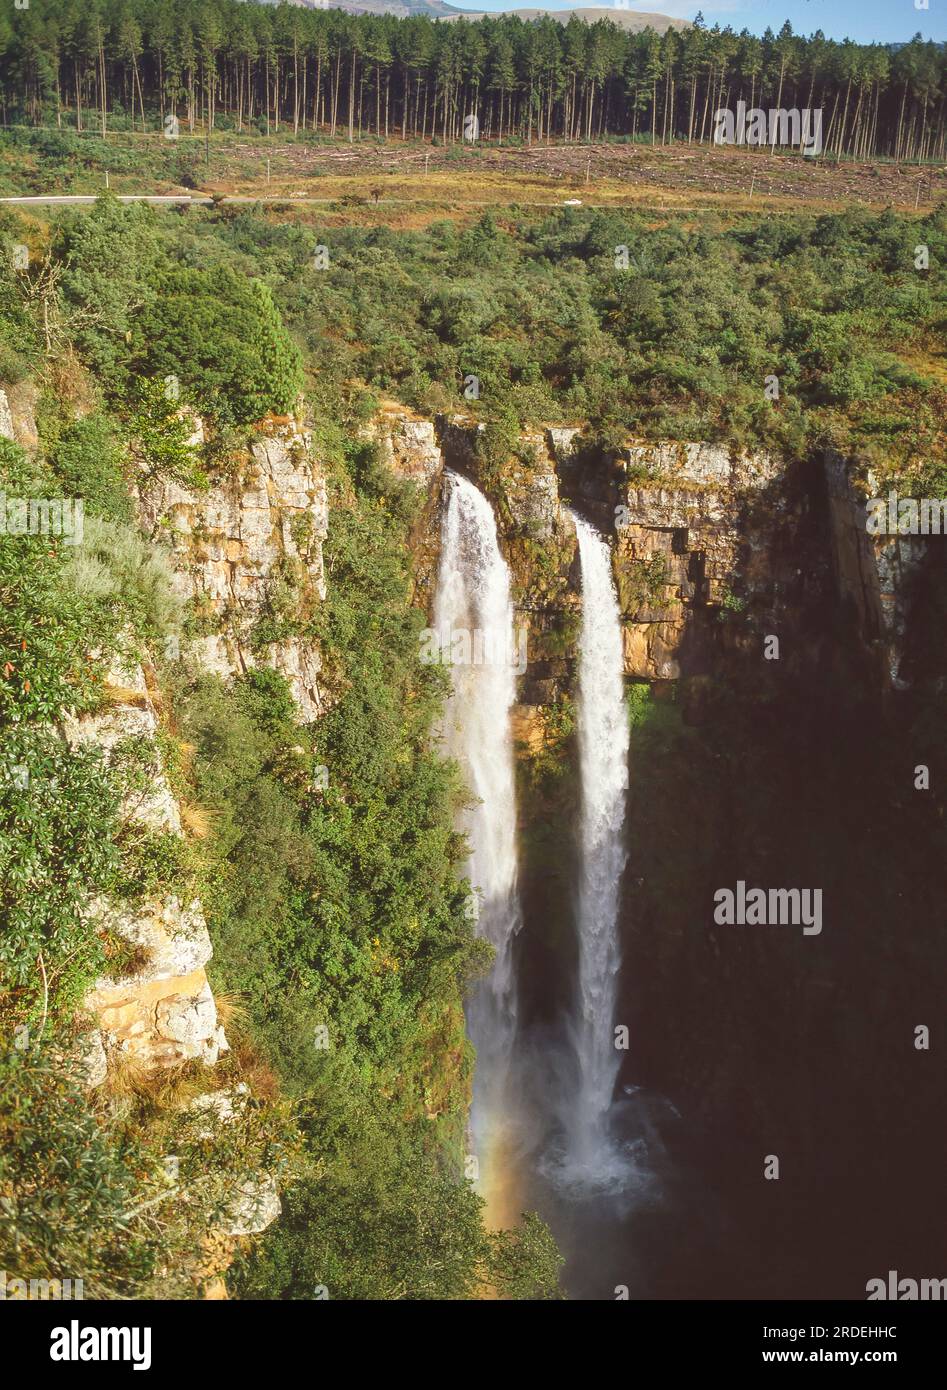 Les chutes Mac-Mac sont une chute d'eau de 65 mètres sur la rivière Mac-Mac dans la réserve naturelle de la forêt Mac-Mac, à Mpumalanga, en Afrique du Sud. Banque D'Images